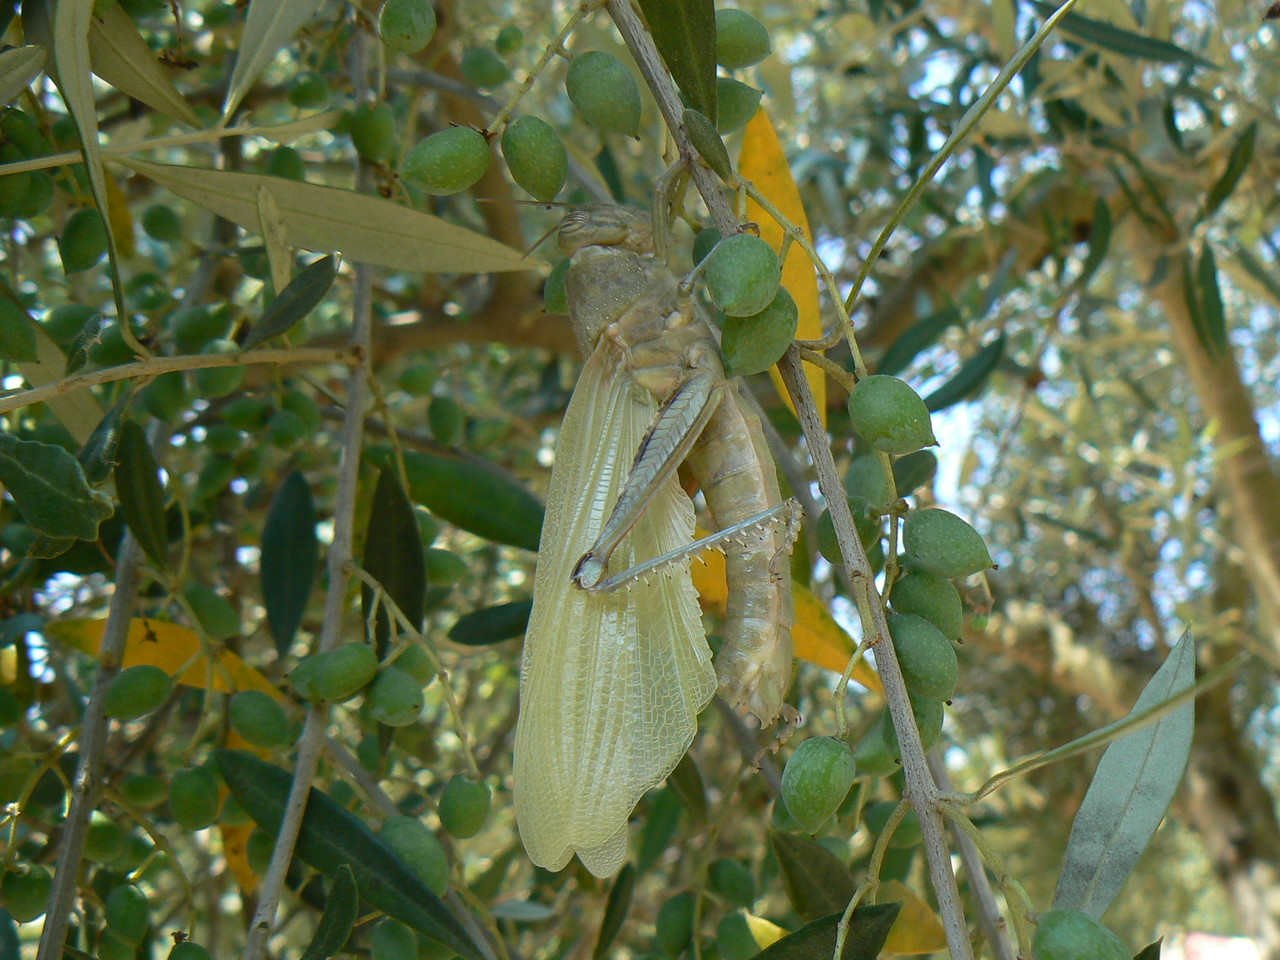 Egyptian Locust Anacridium aegyptium